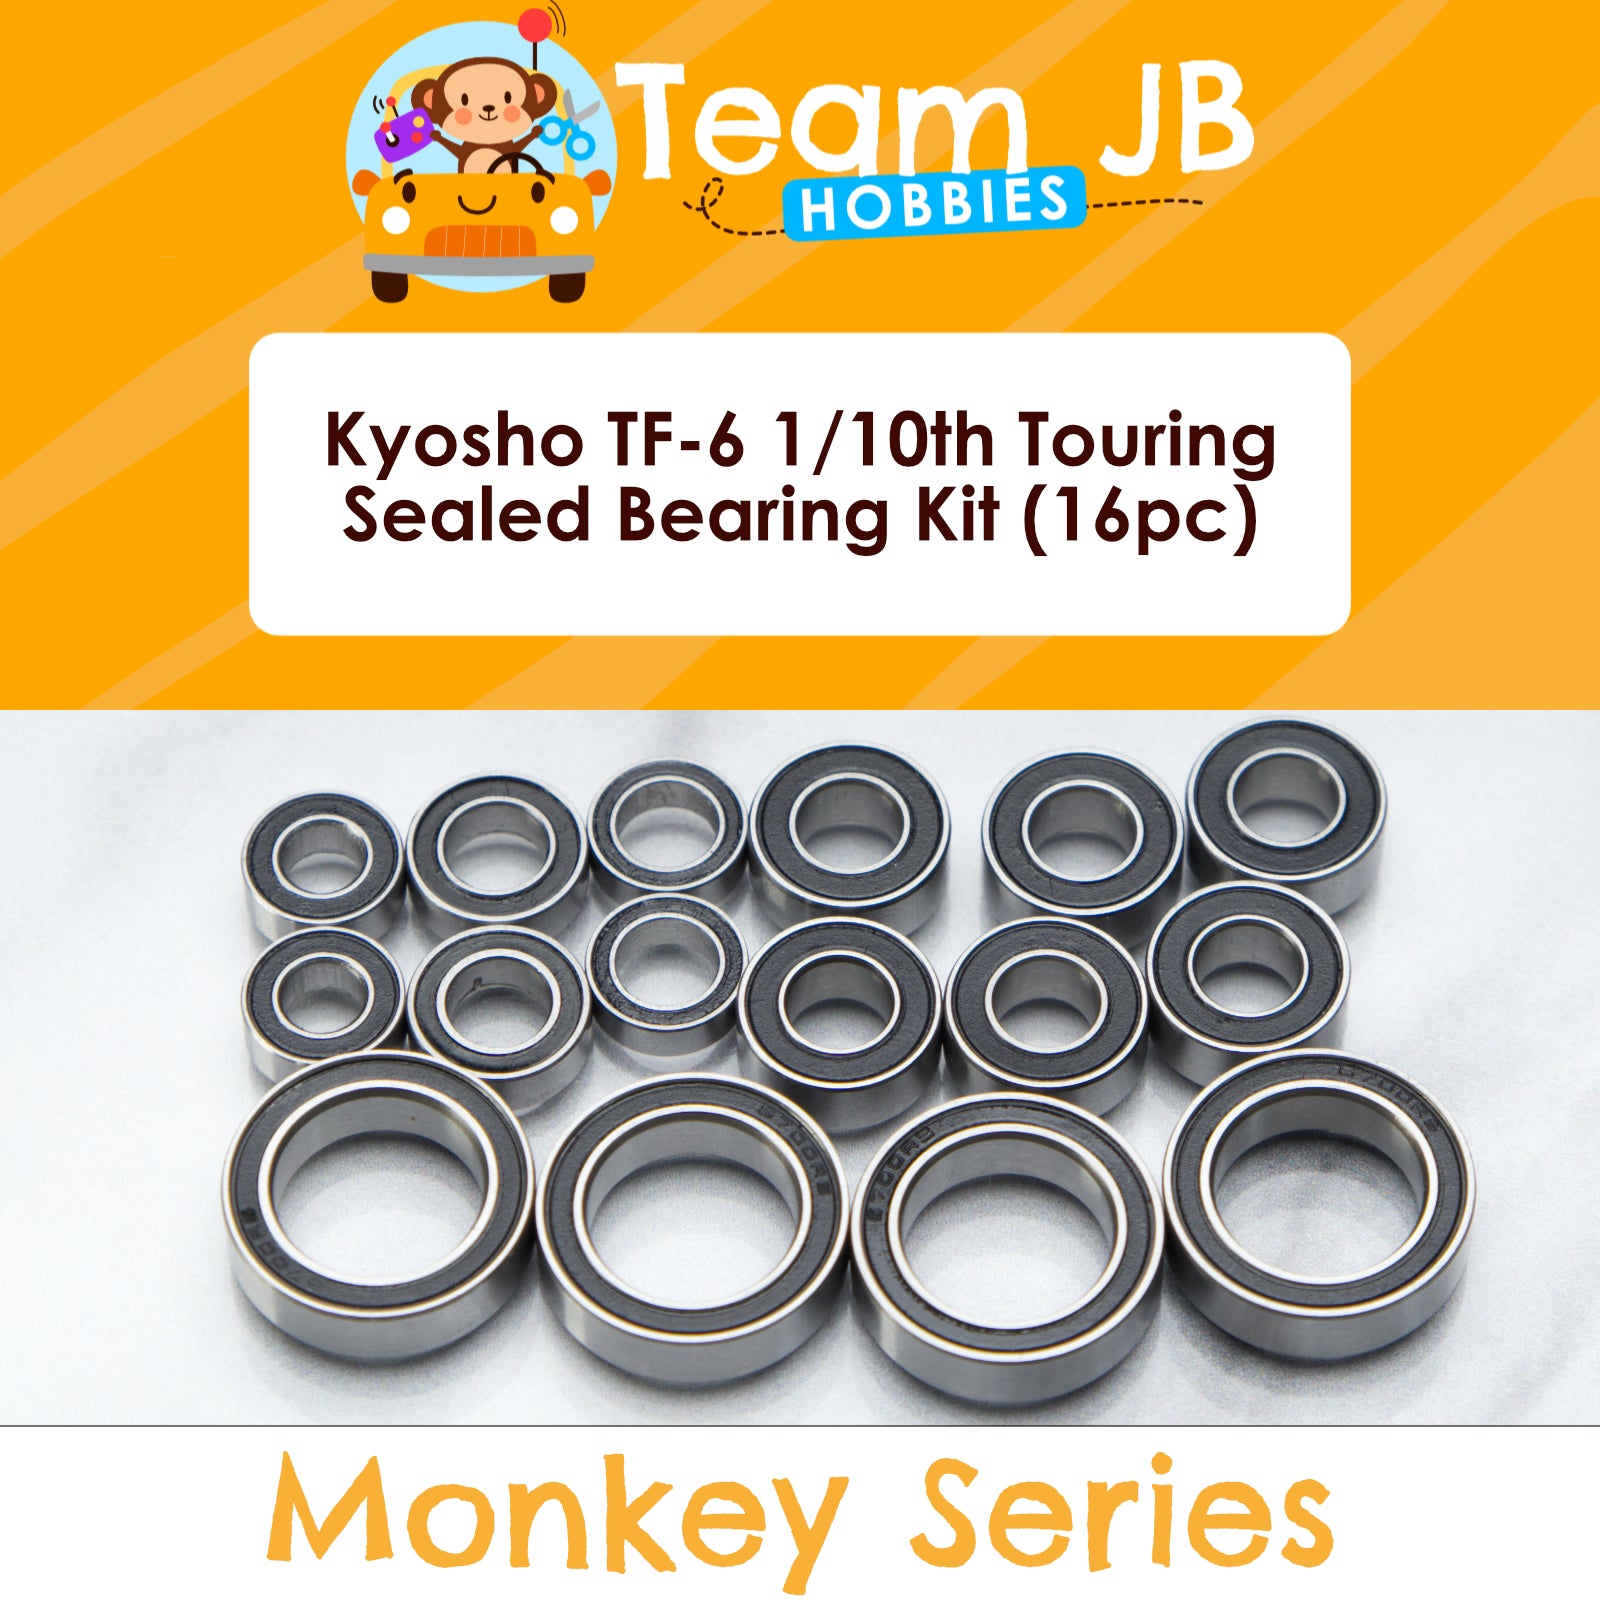 Kyosho TF-6 1/10th Touring - Sealed Bearing Kit